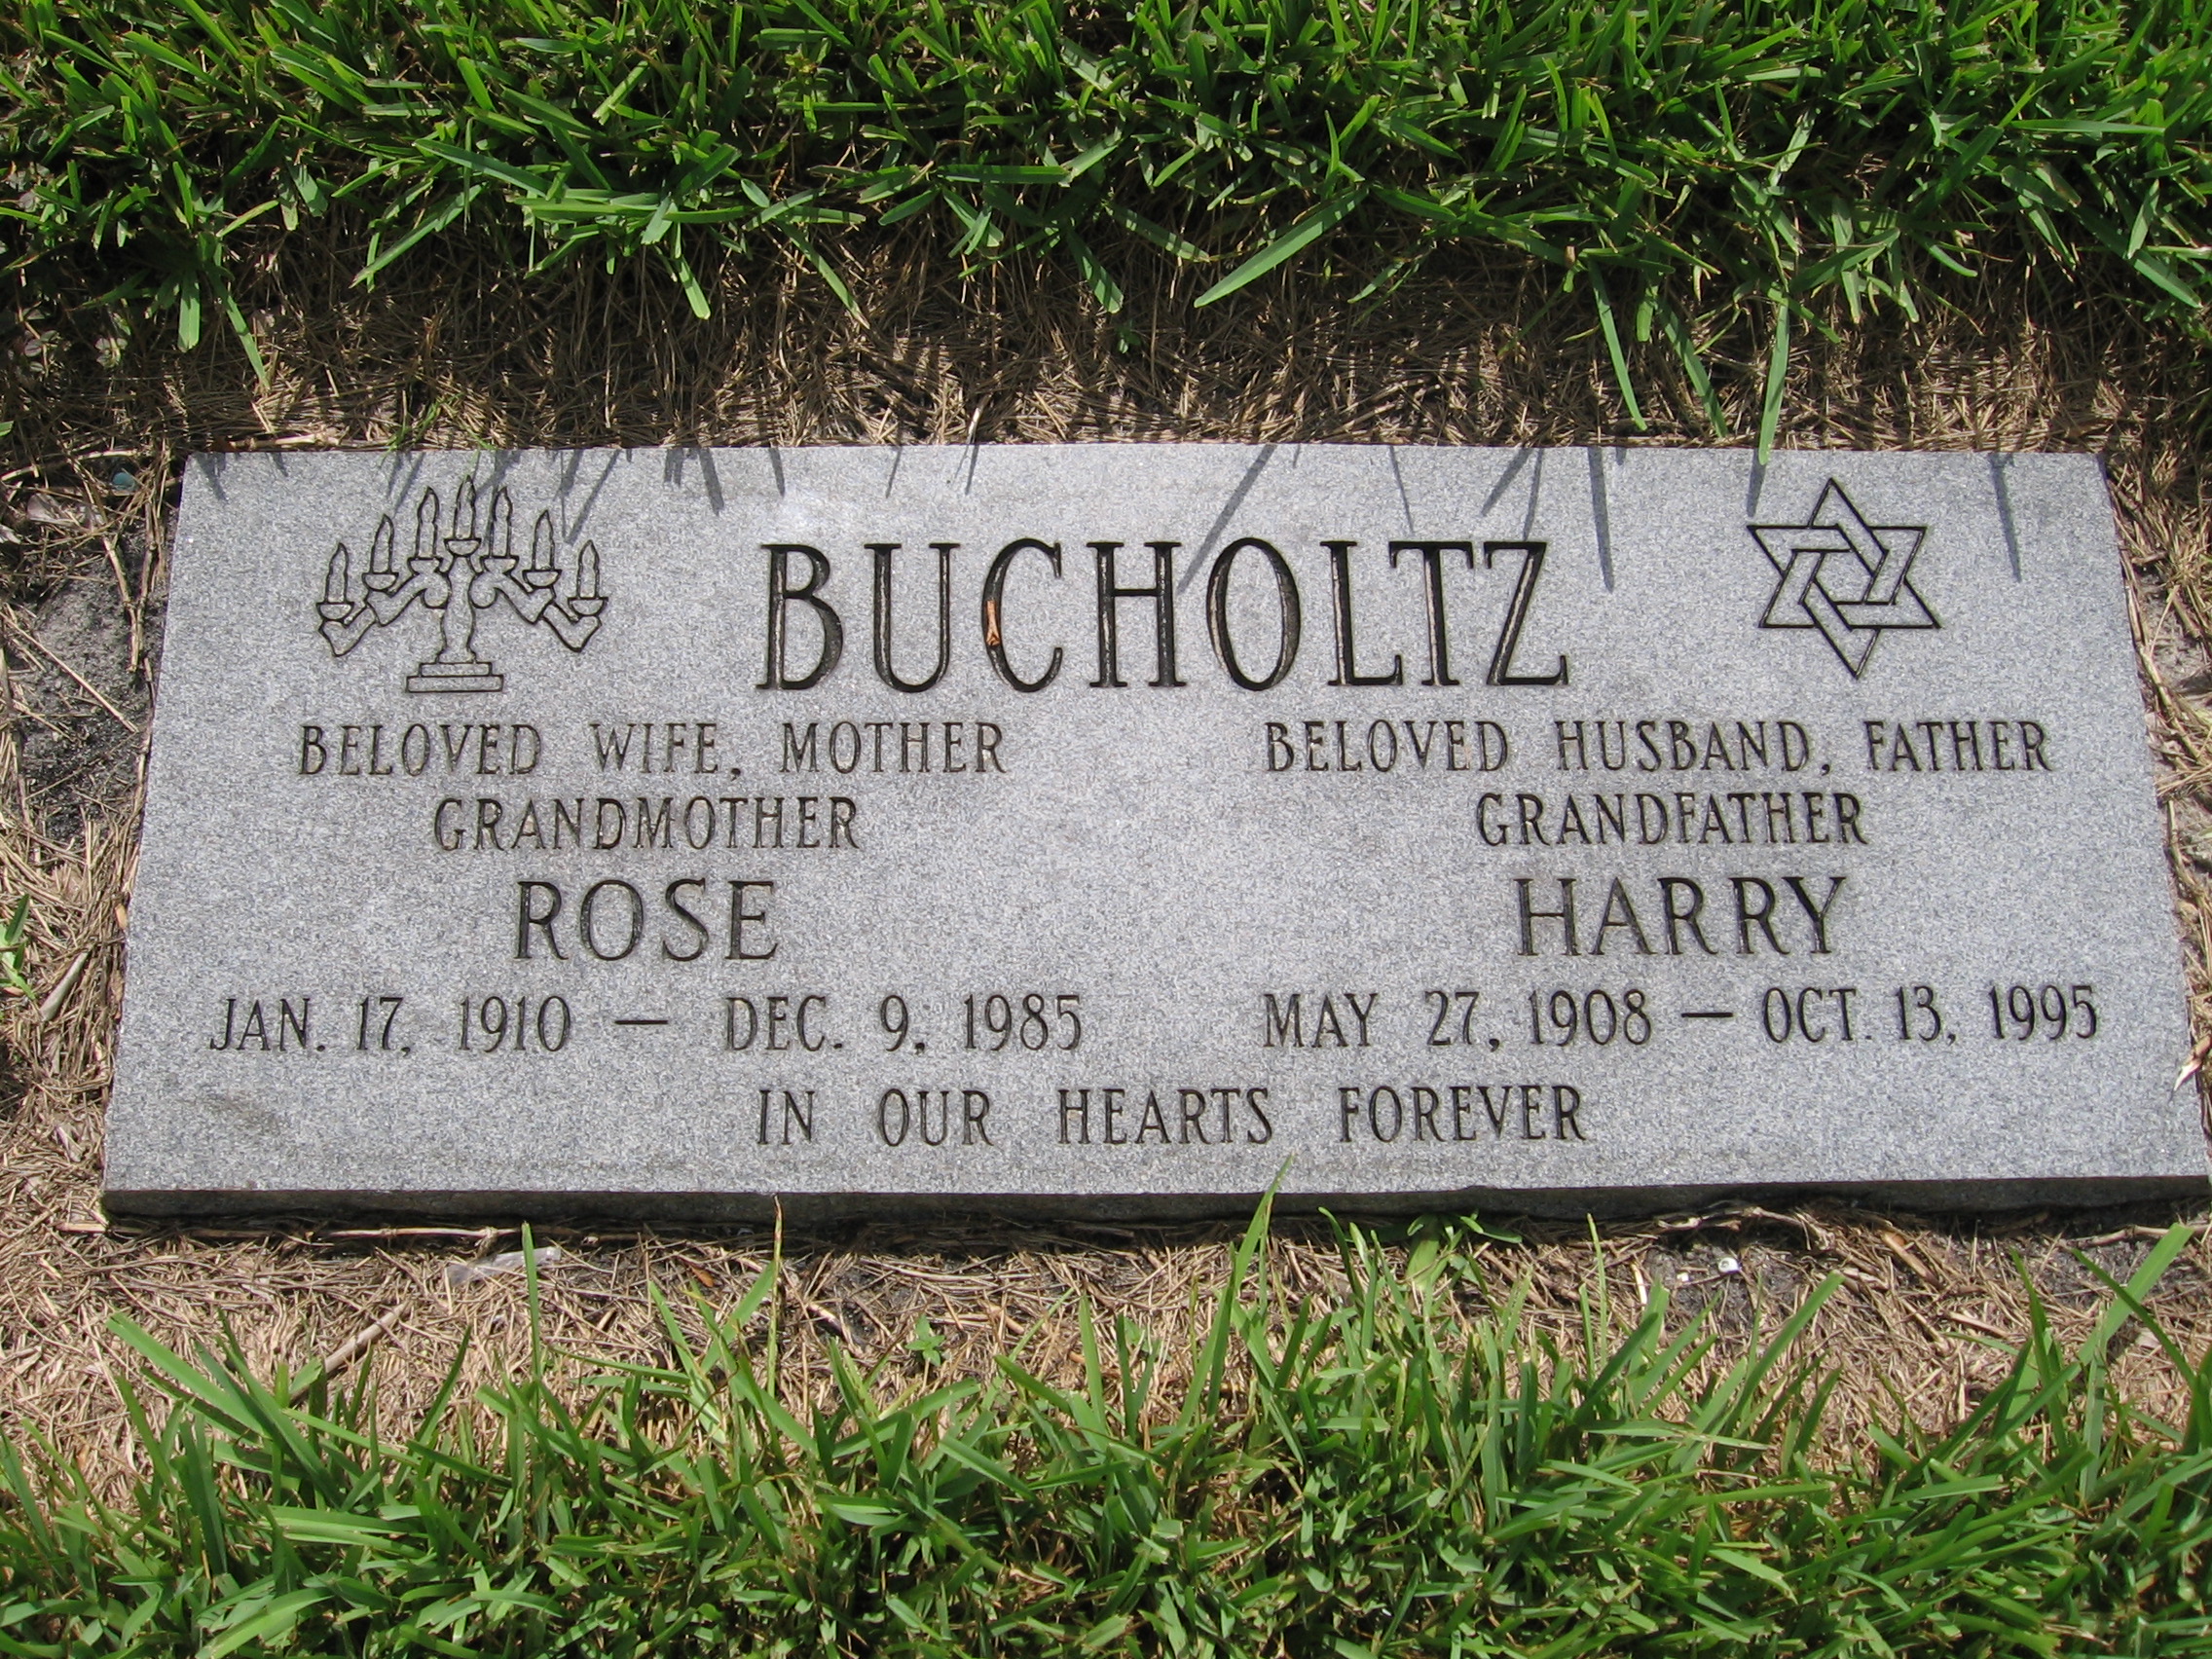 Rose Bucholtz